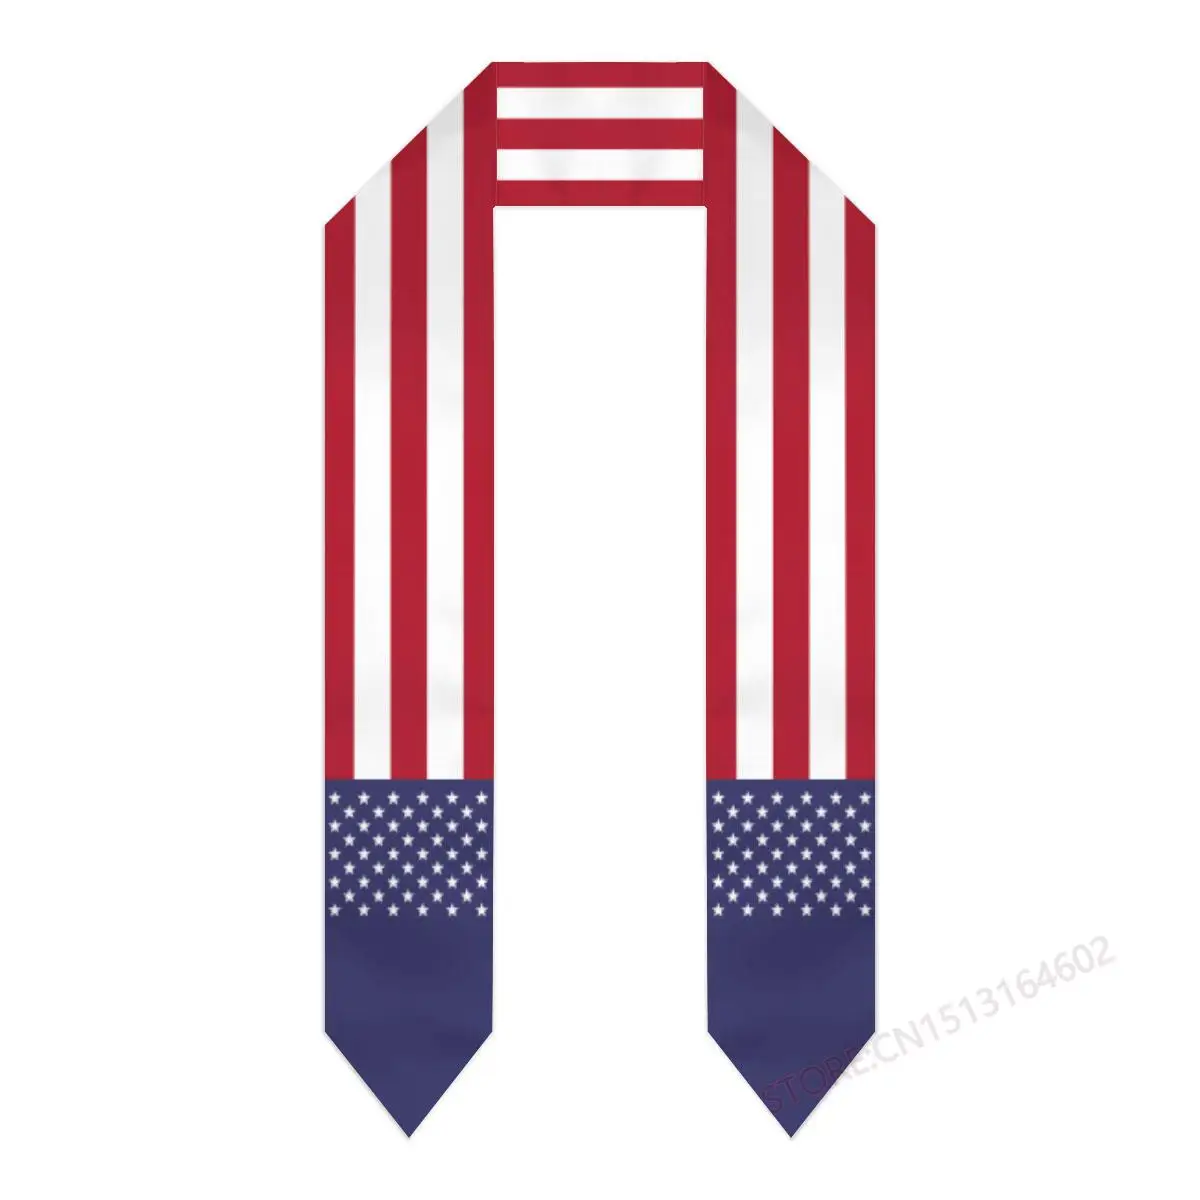 Пользовательское название Или логотип Американский Шарф с флагом США, Выпускной палантин, пояс для международного обучения за границей